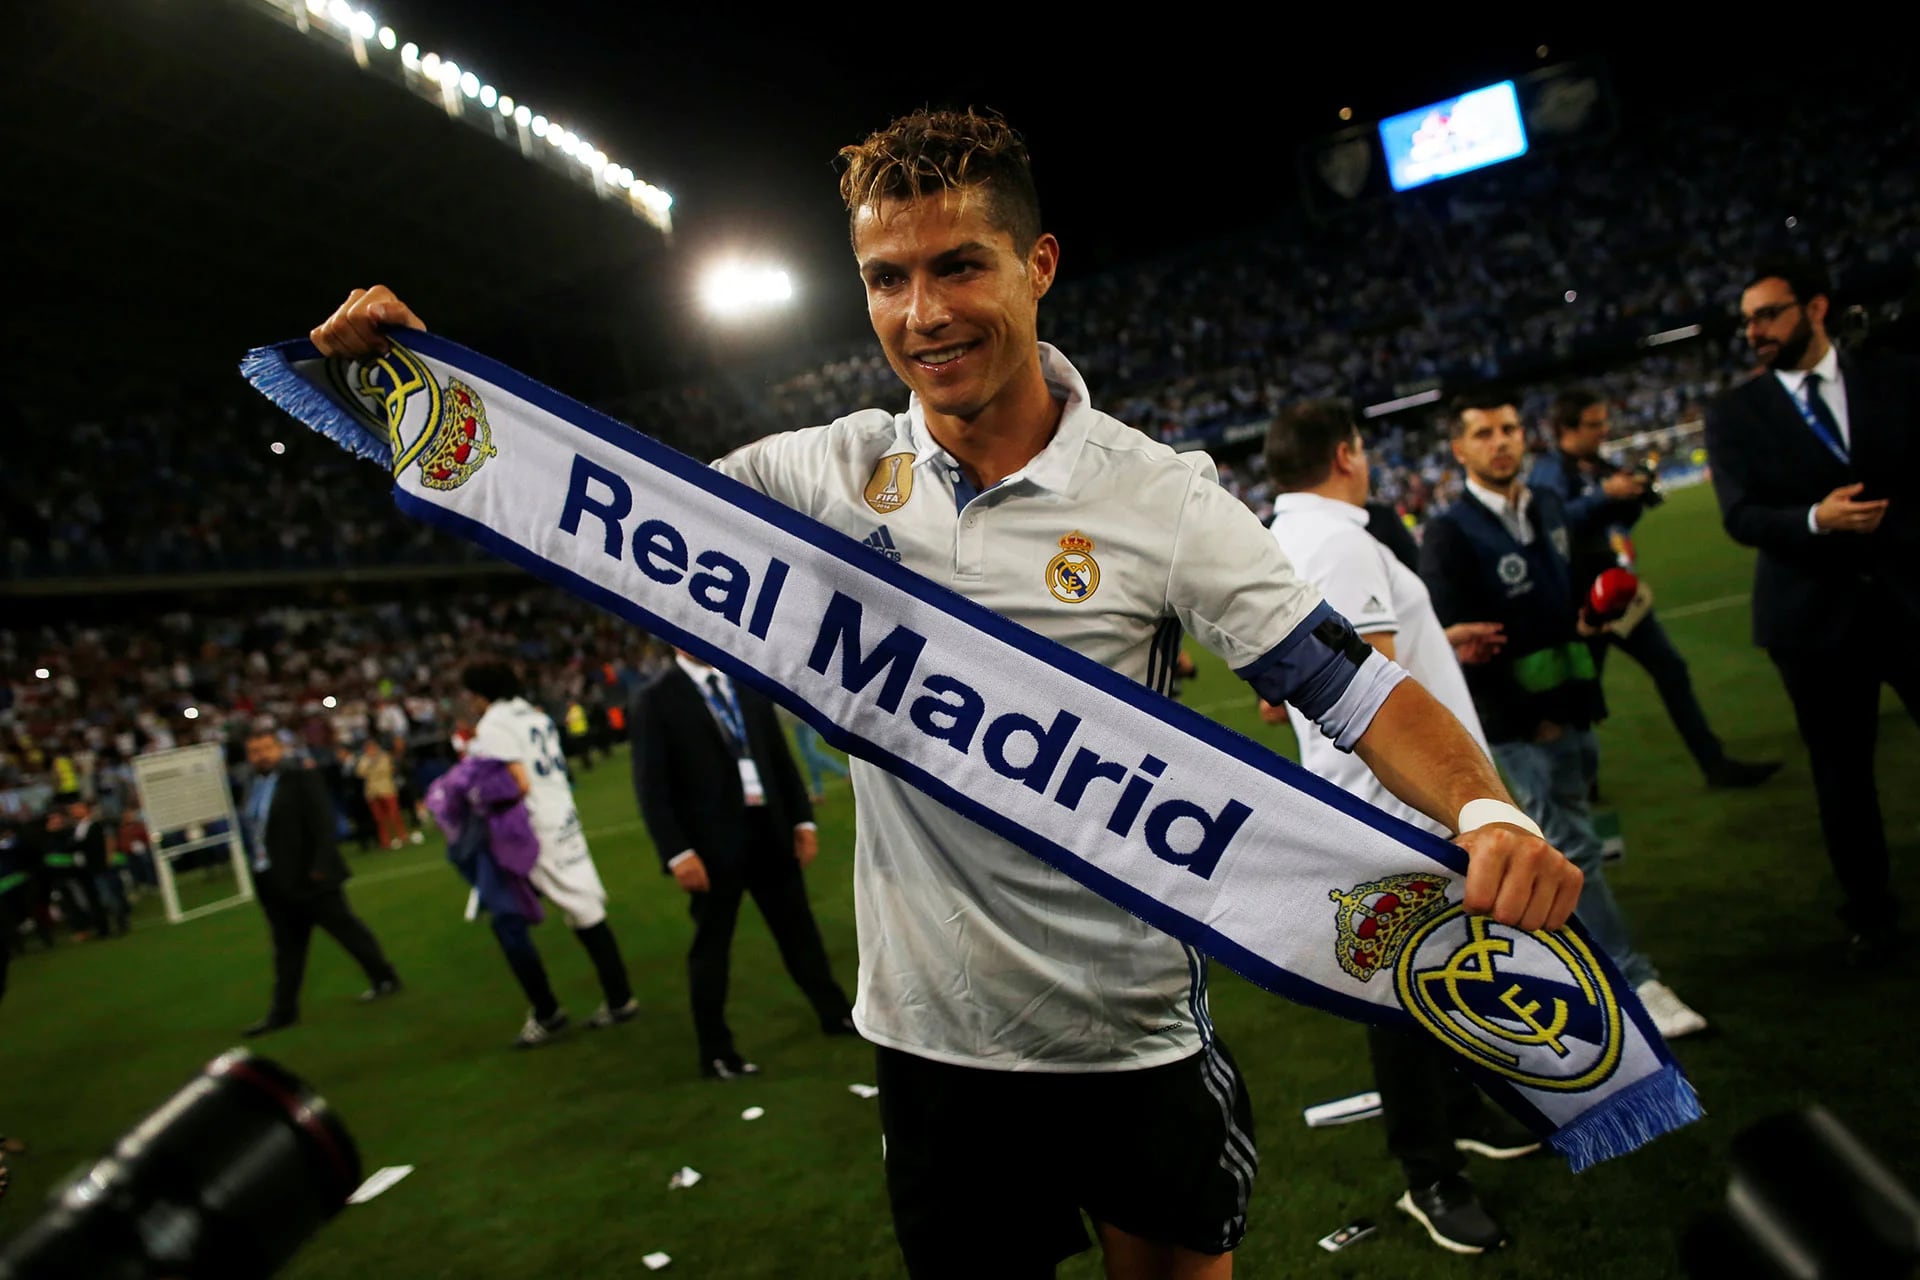 El jugador obtuvo la Champions League y La Liga en la última temporada (Reuters)